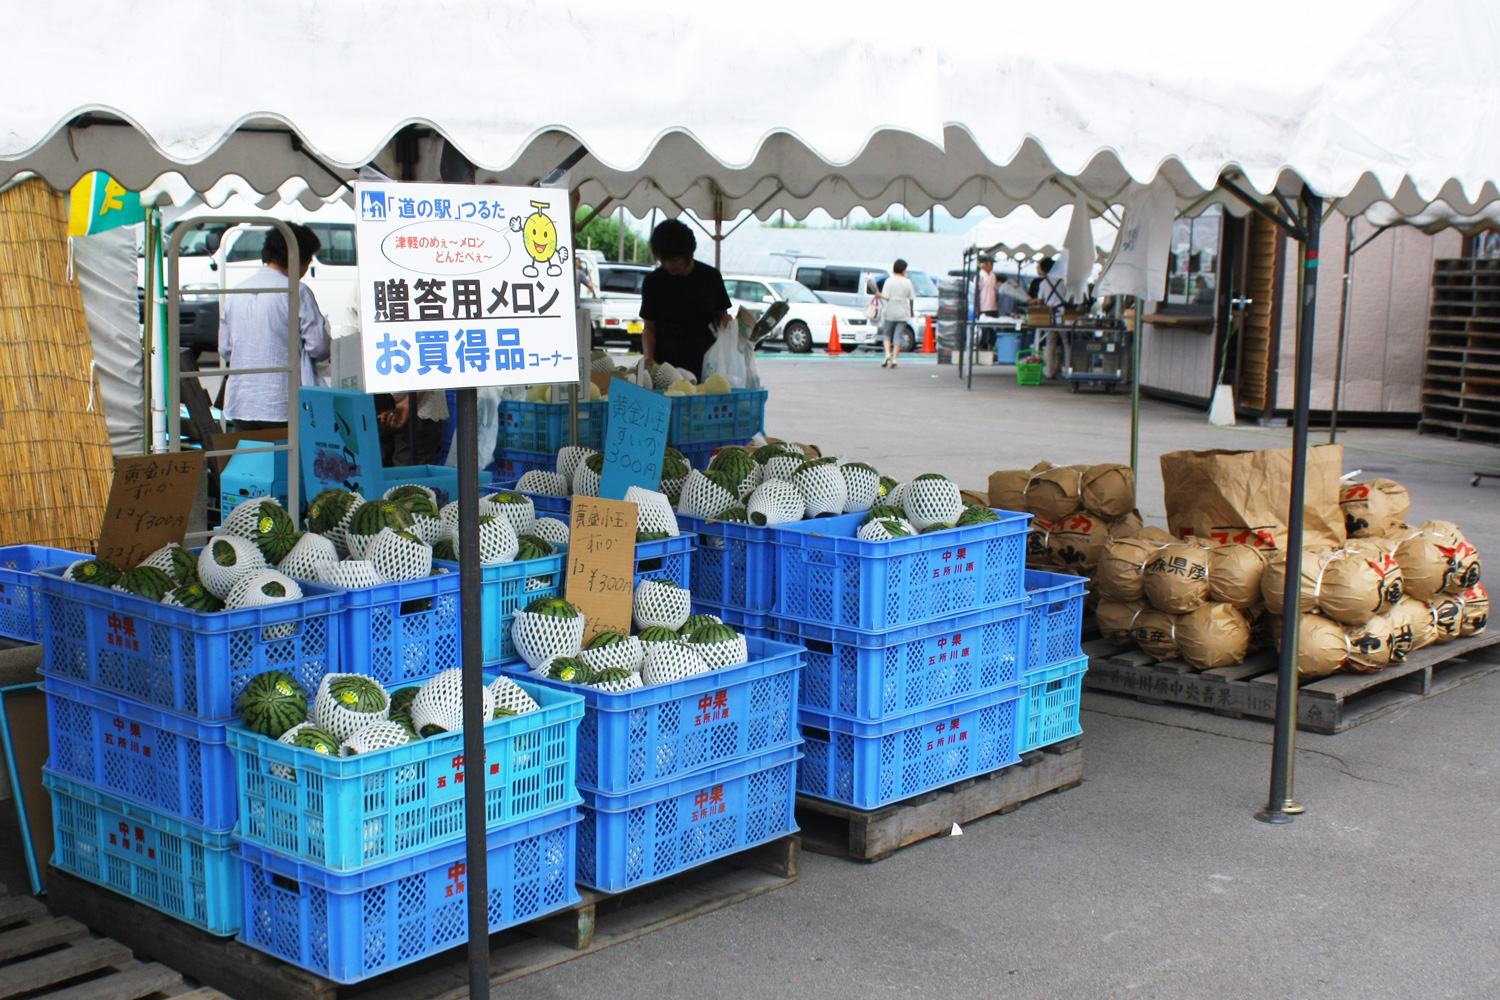 當中販賣著鶴田町內的新鮮現摘農產品